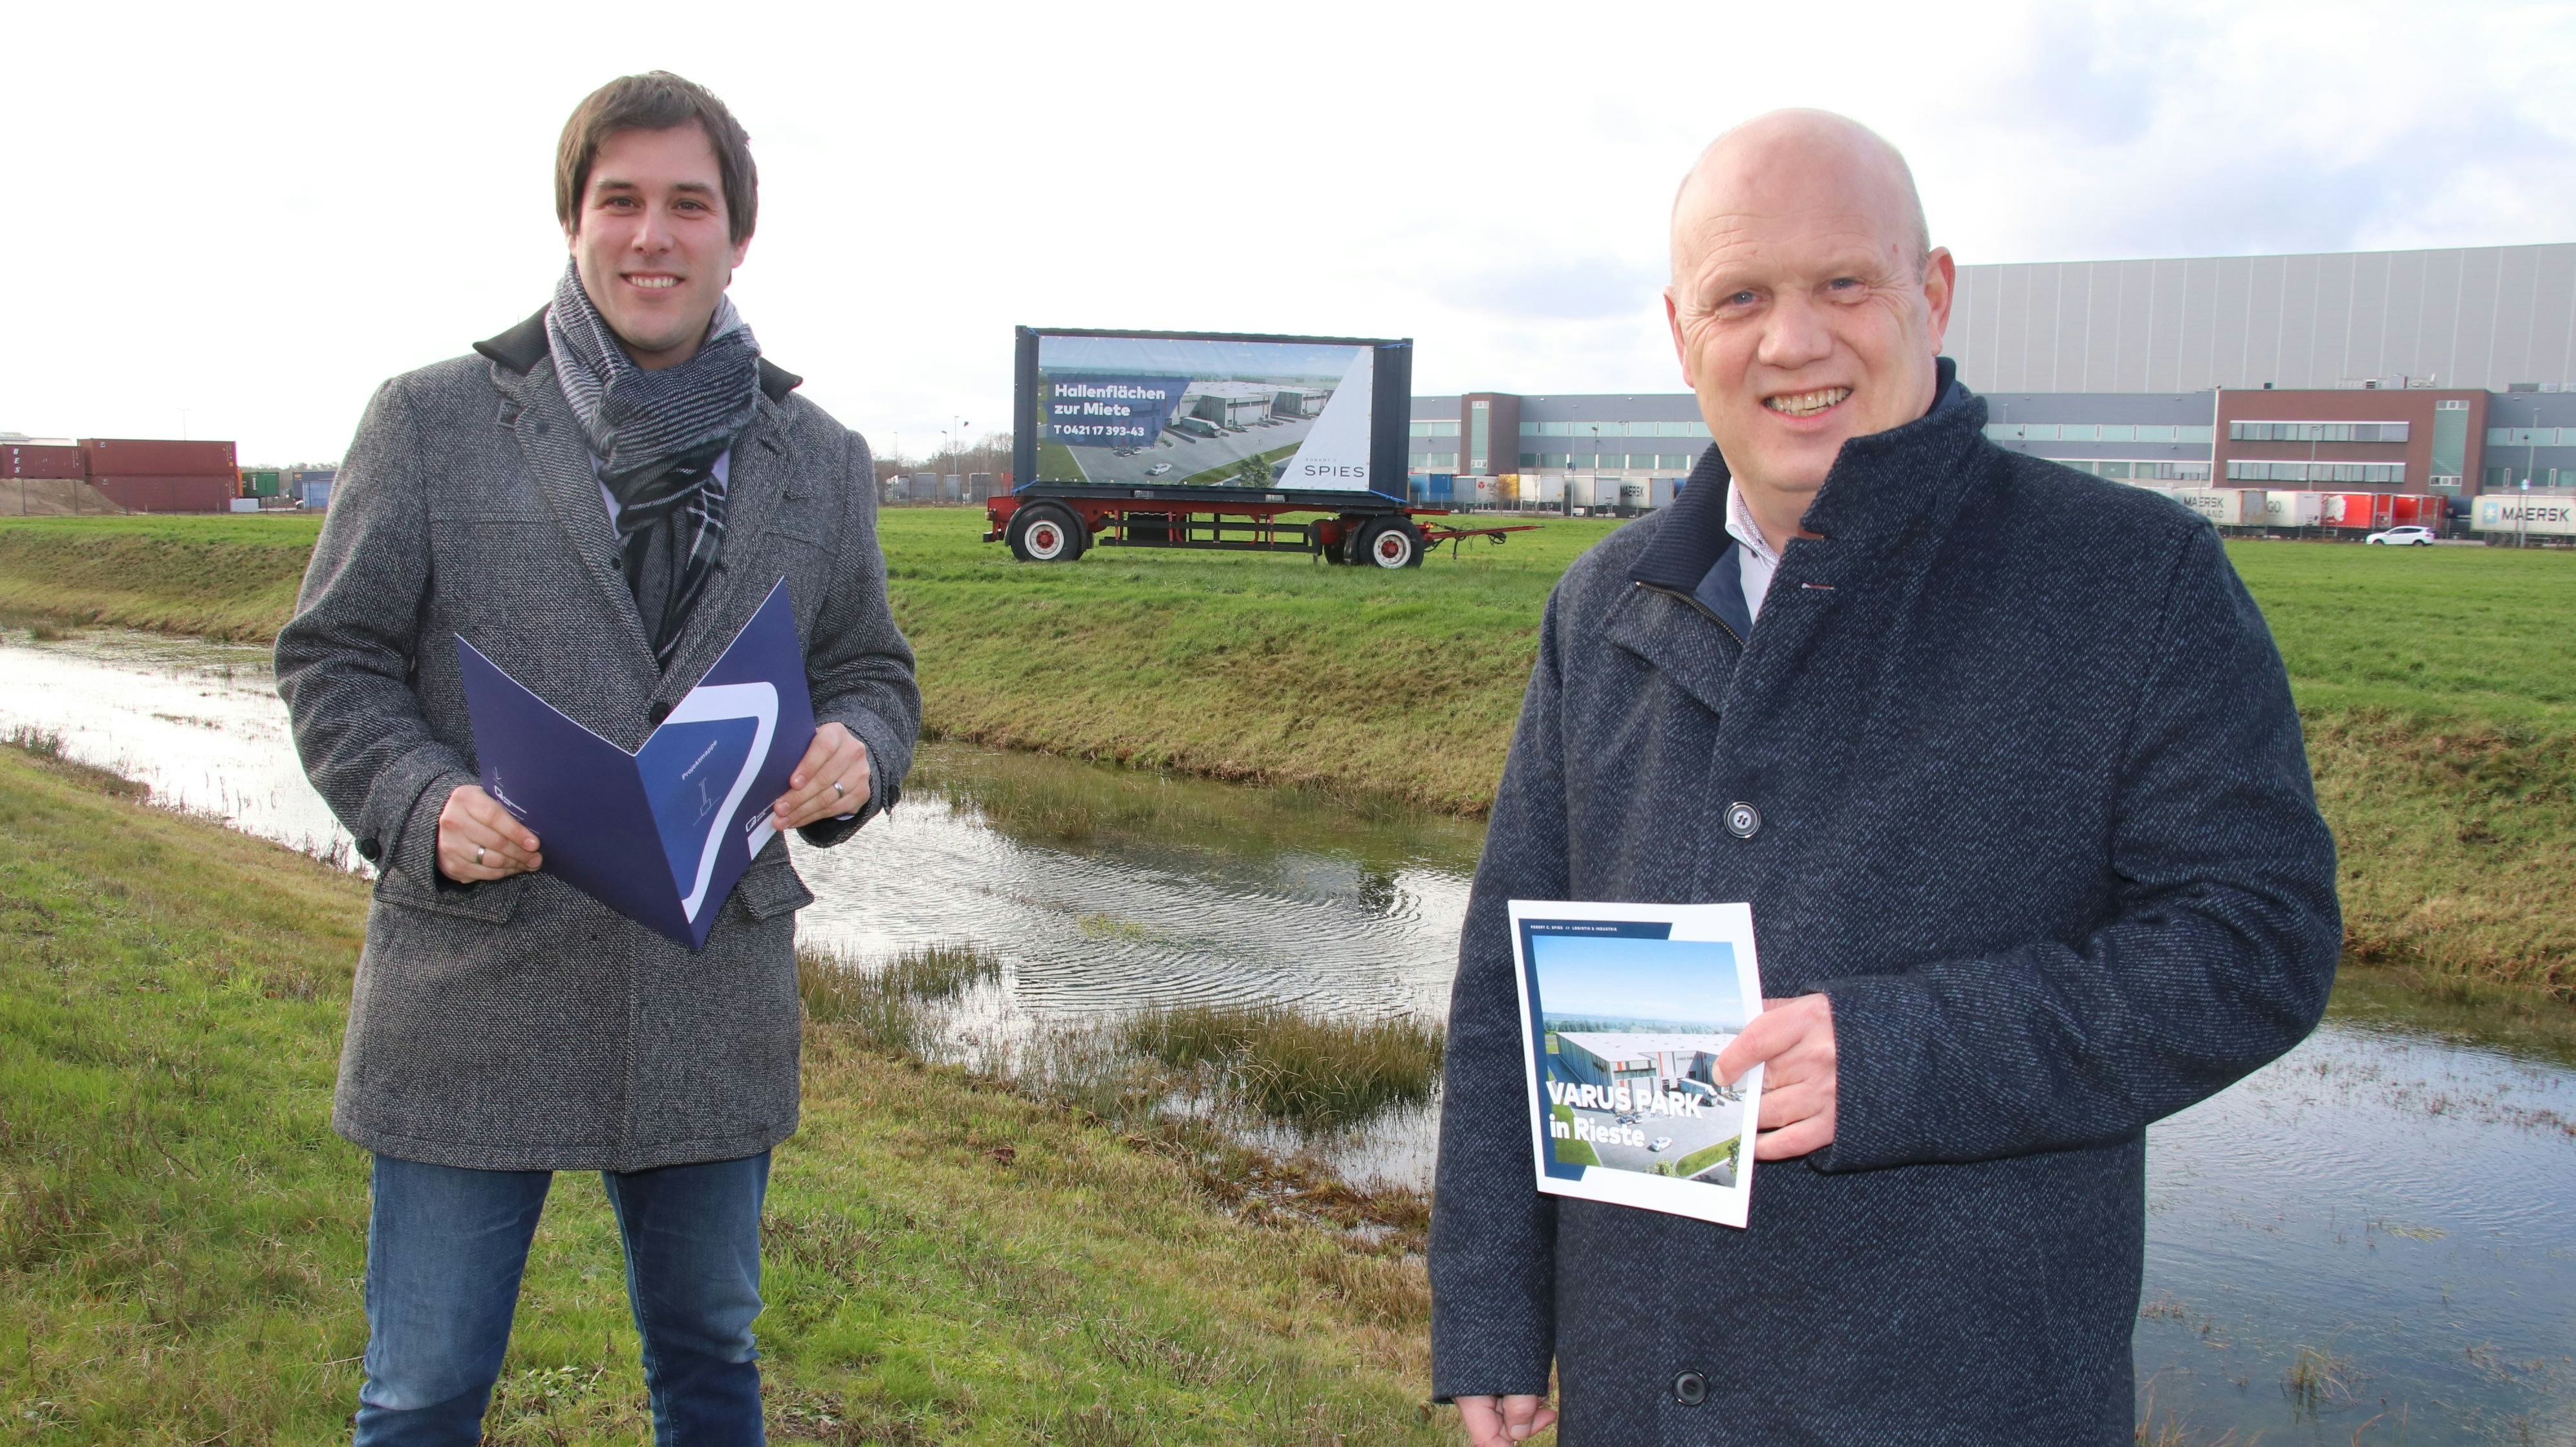 Zufriedene Gesichter: Matthias Meyer (links) und Uwe Schumacher werfen einen optimistischen Blick in die Zukunft des Niedersachsenparks, in dem sich inzwischen 67 Firmen angesiedelt haben. Foto: Lammert